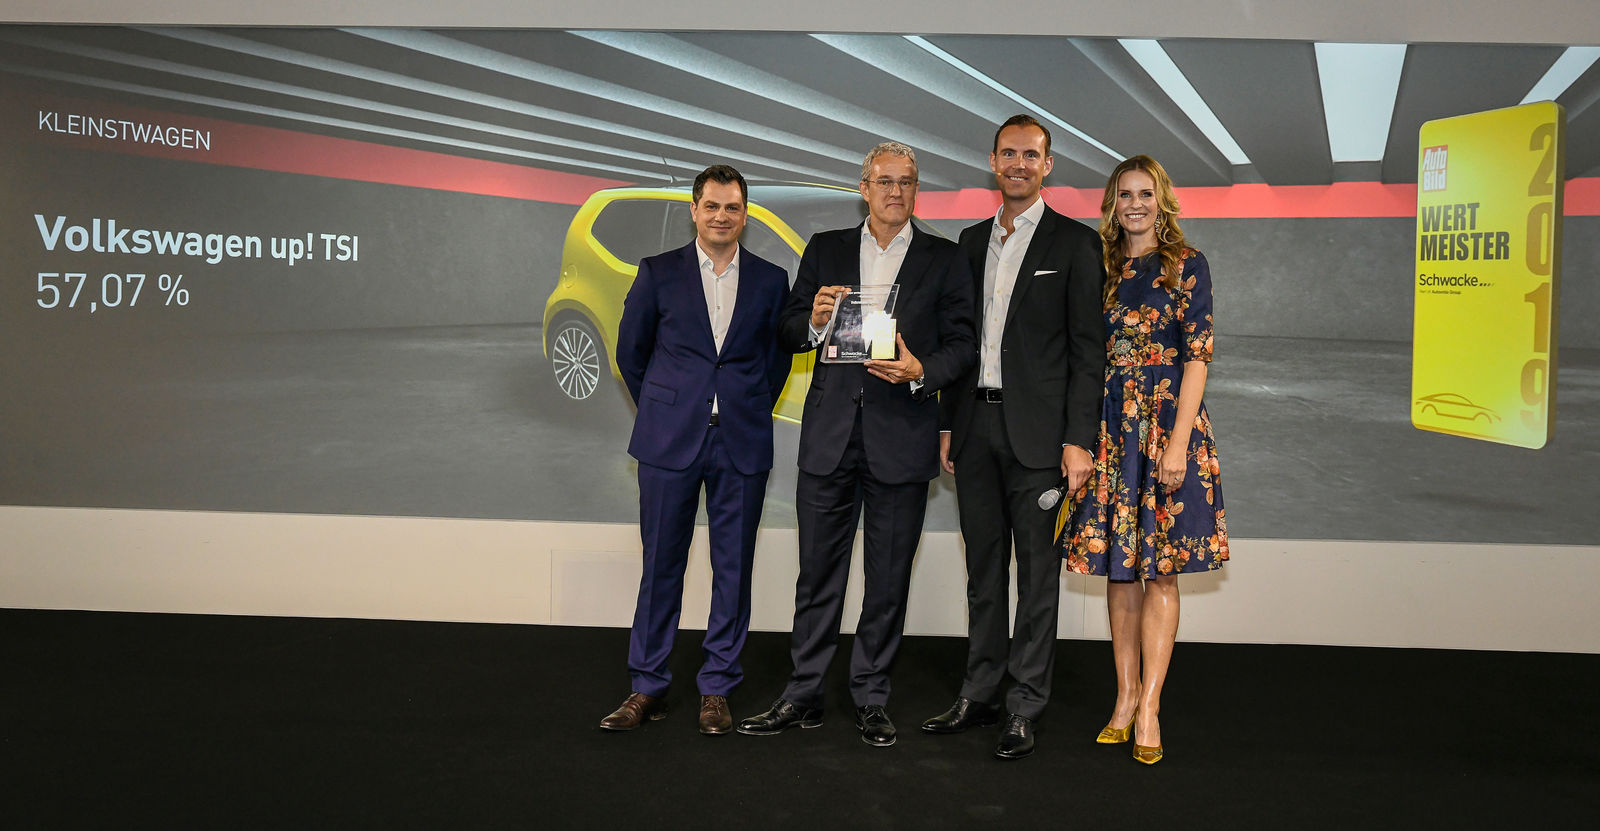 Volkswagen up! zum „Wertmeister 2019” gekürt